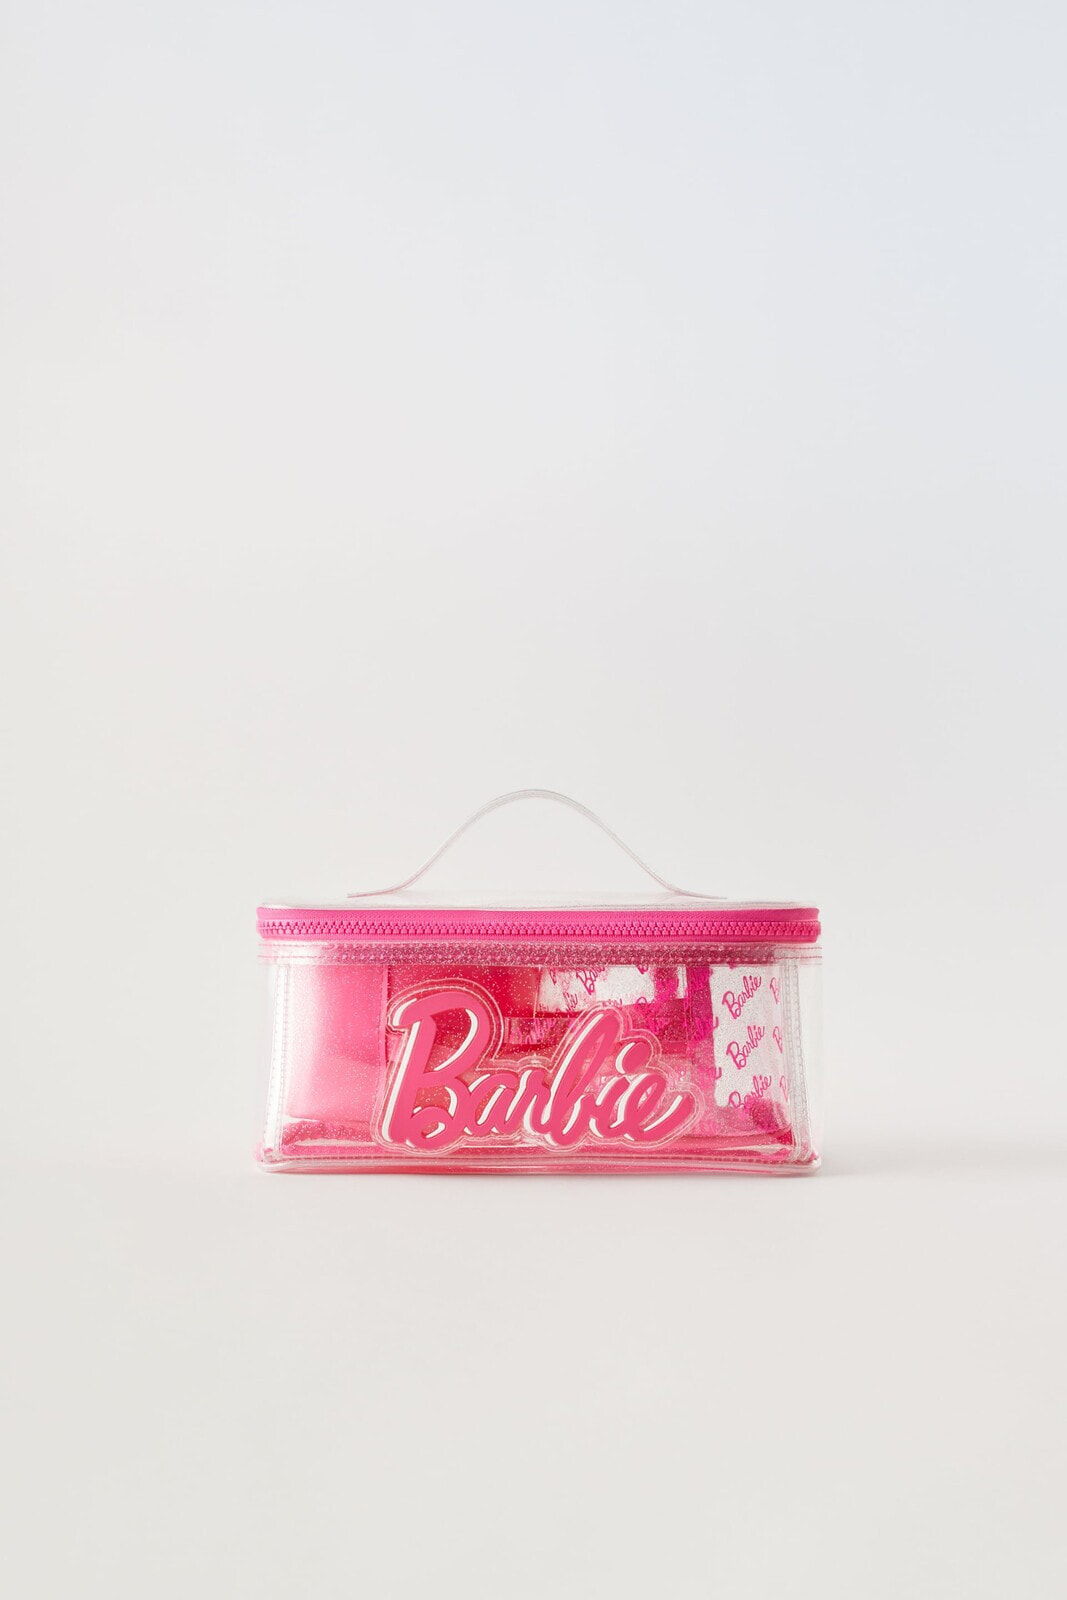 Barbie™ vinyl toiletry bag pack